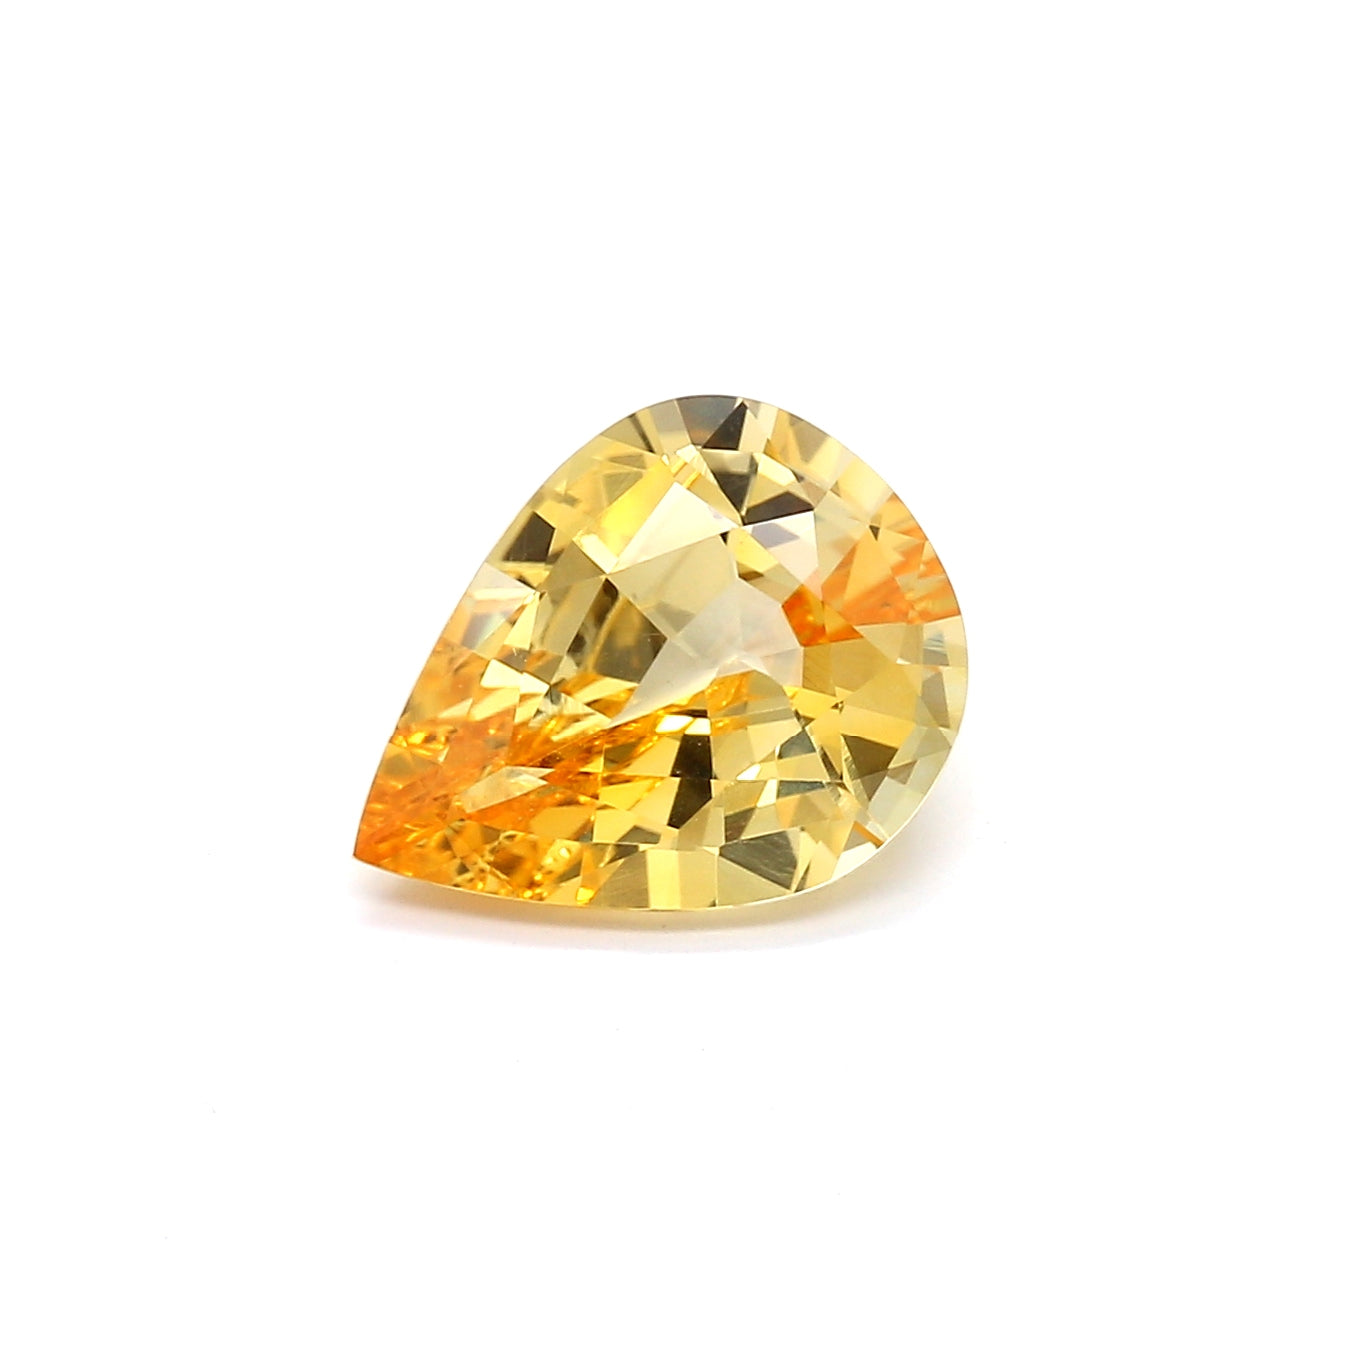 3.52ct Yellow, Pear Shape Sapphire, Heated, Sri Lanka - 11.48 x 8.90 x 4.90mm